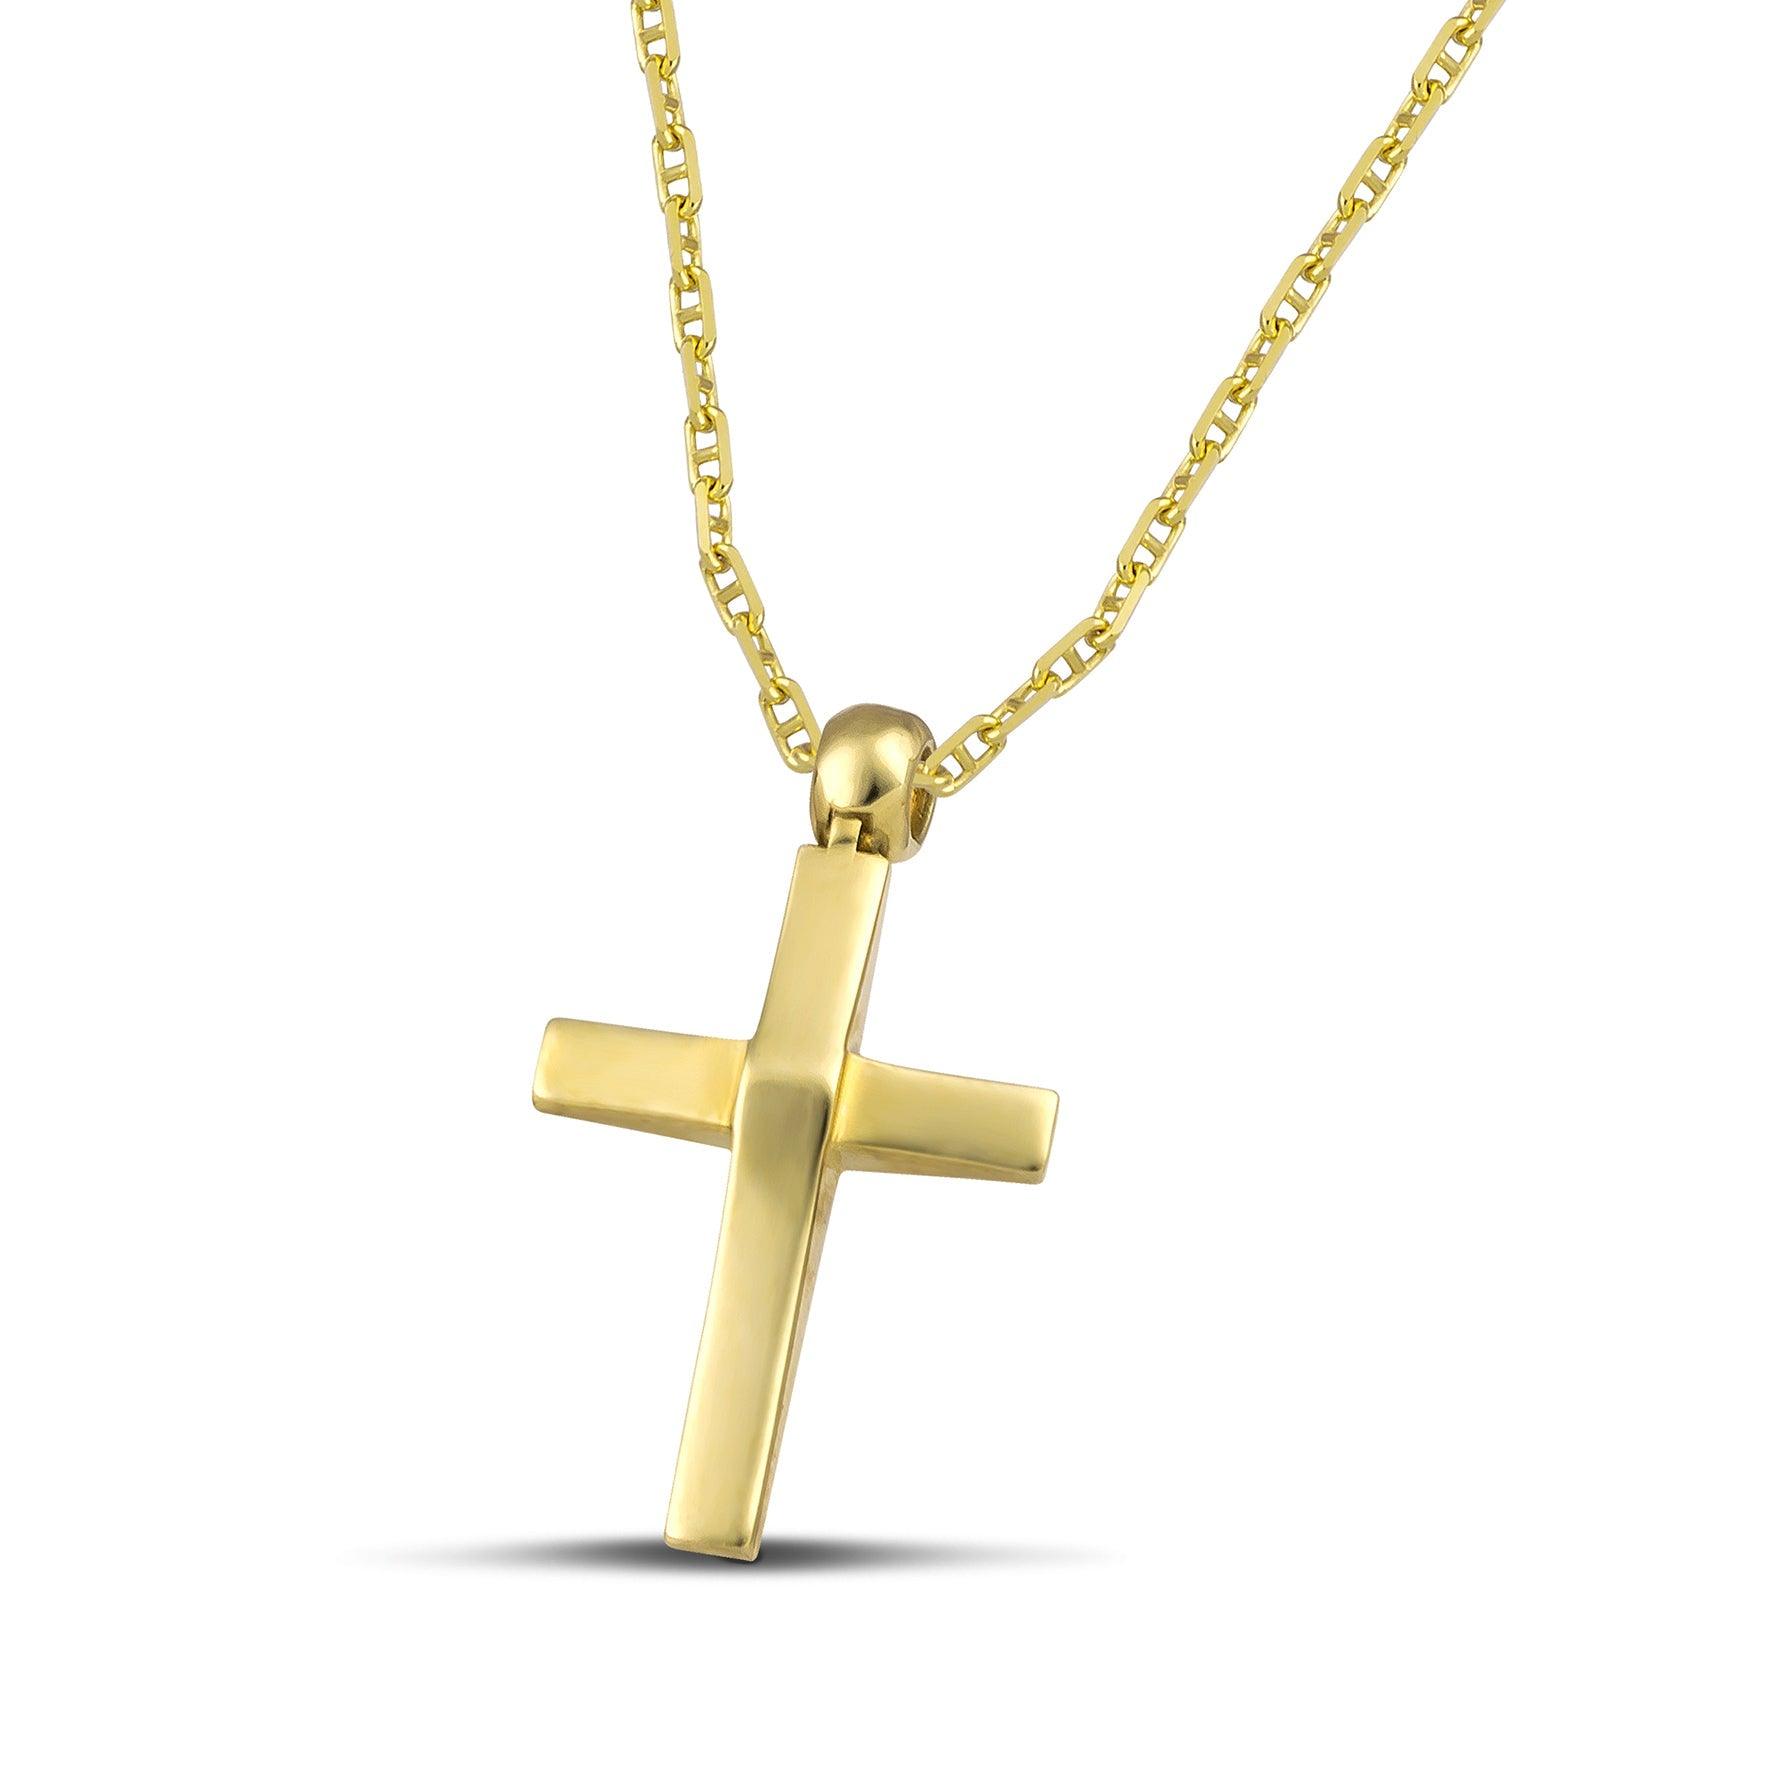 Γυναικείος σταυρός βάπτισης κατασκευασμένος από χρυσό 14 καρατίων διπλής όψης με σαγρέ και λουστράτη επιφάνεια, και χρυσή αλυσίδα με σχέδιο «Θ».